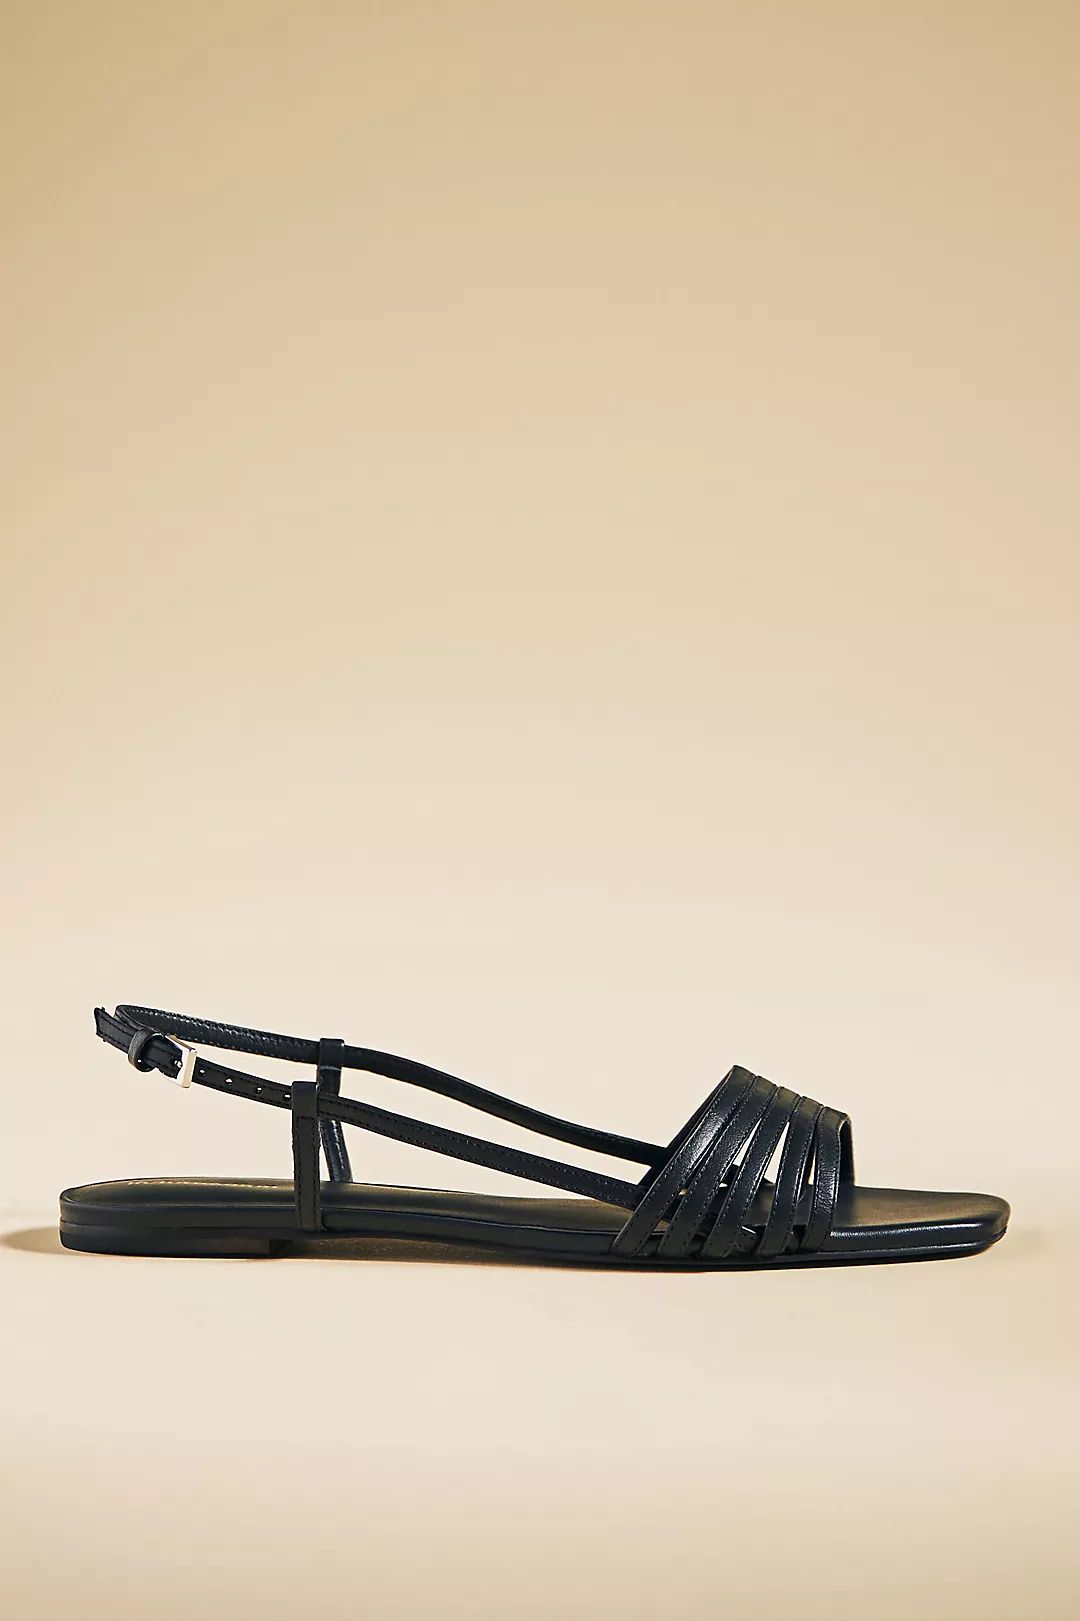 Reformation Millie Lattice Flat Sandals | Anthropologie (US)